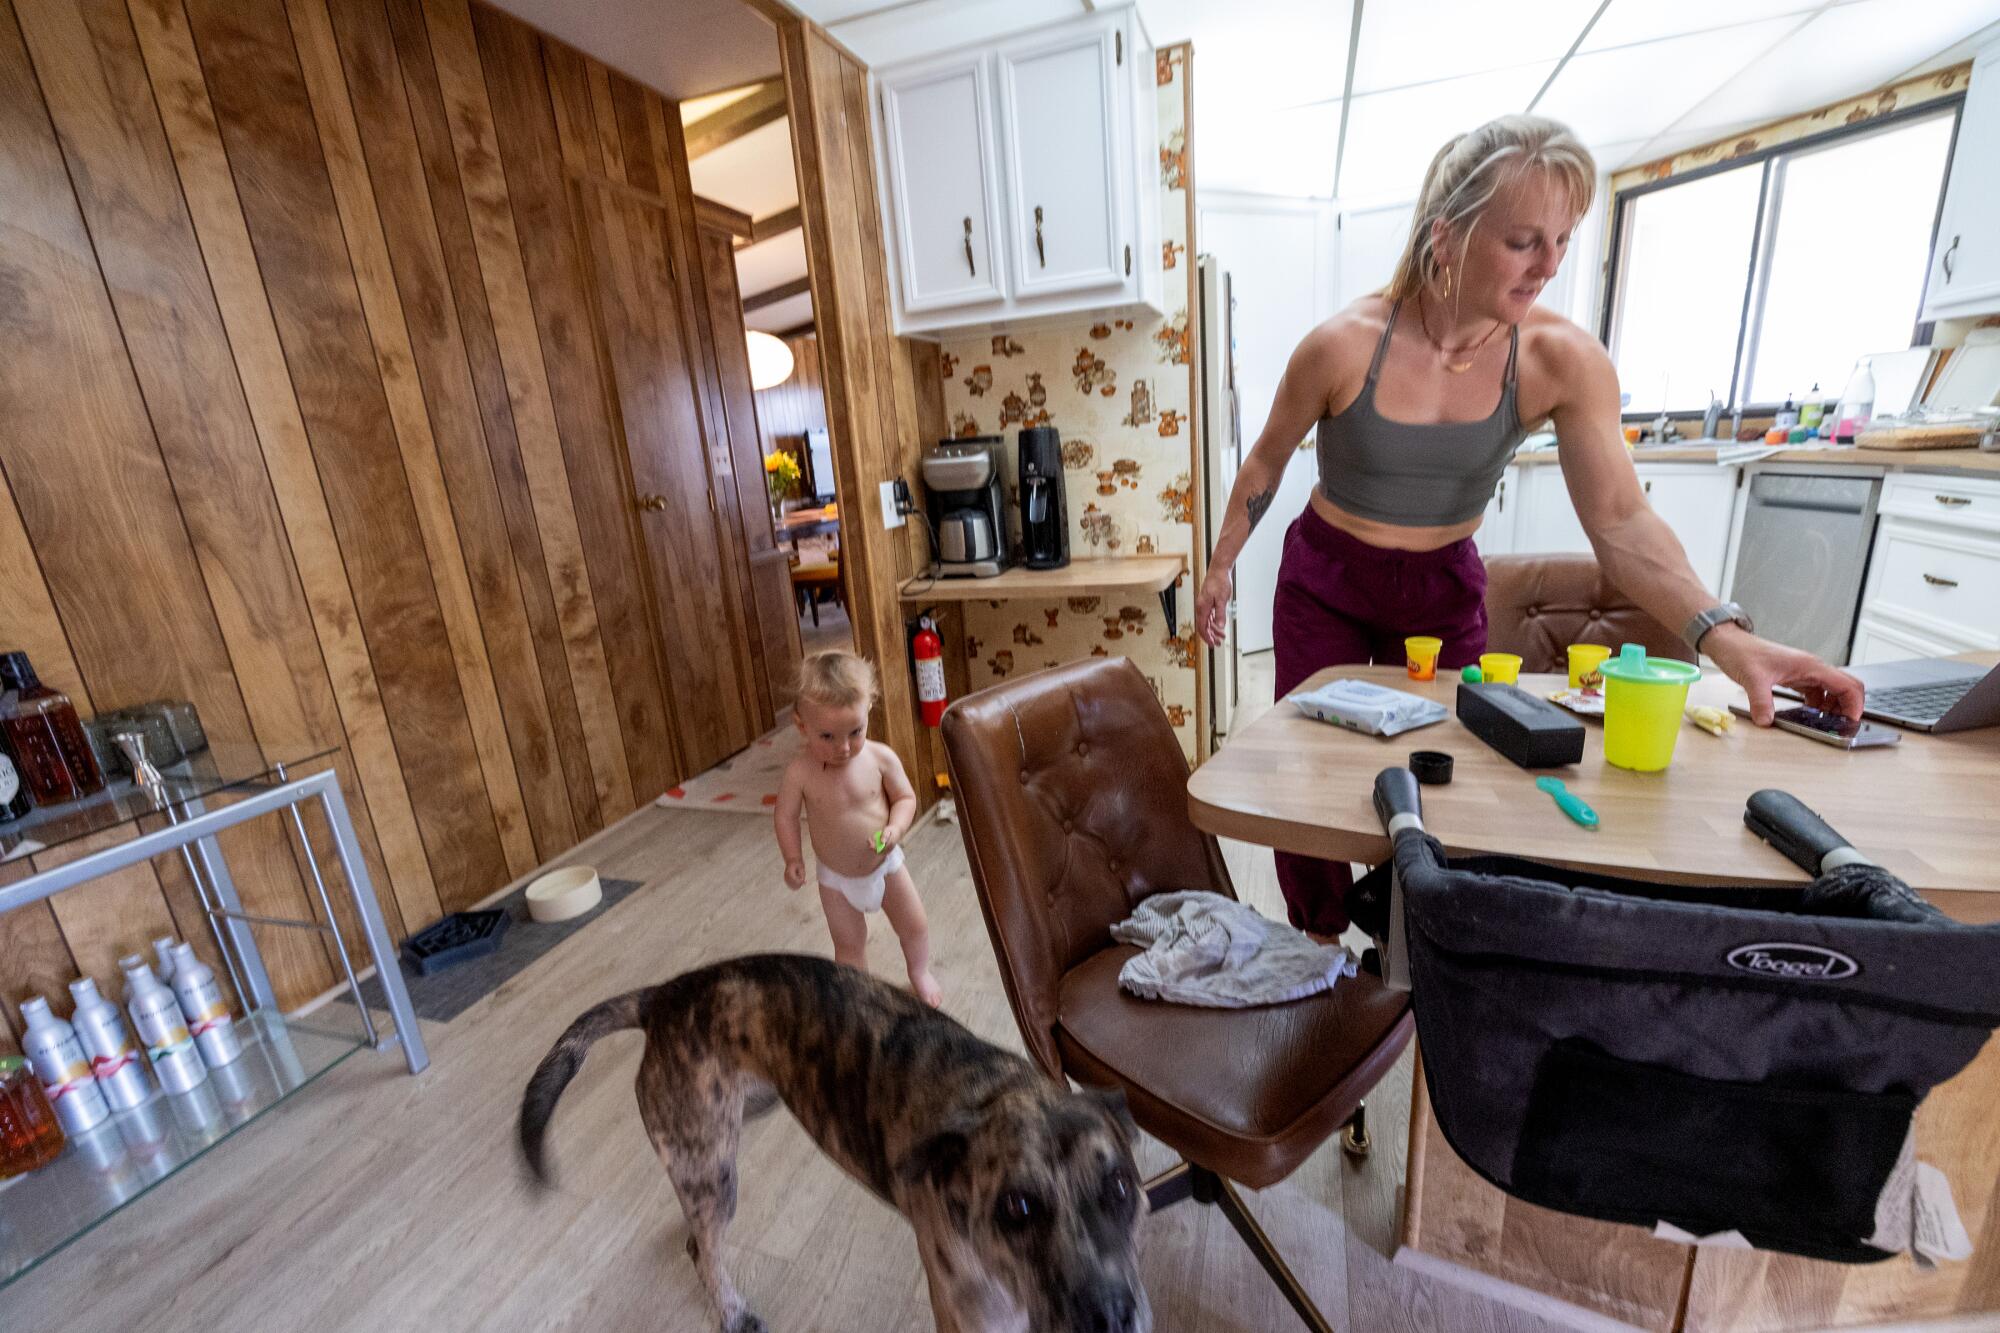 Спортивная женщина на кухне проверяет свой телефон, а рядом находится ее малыш в подгузниках.  